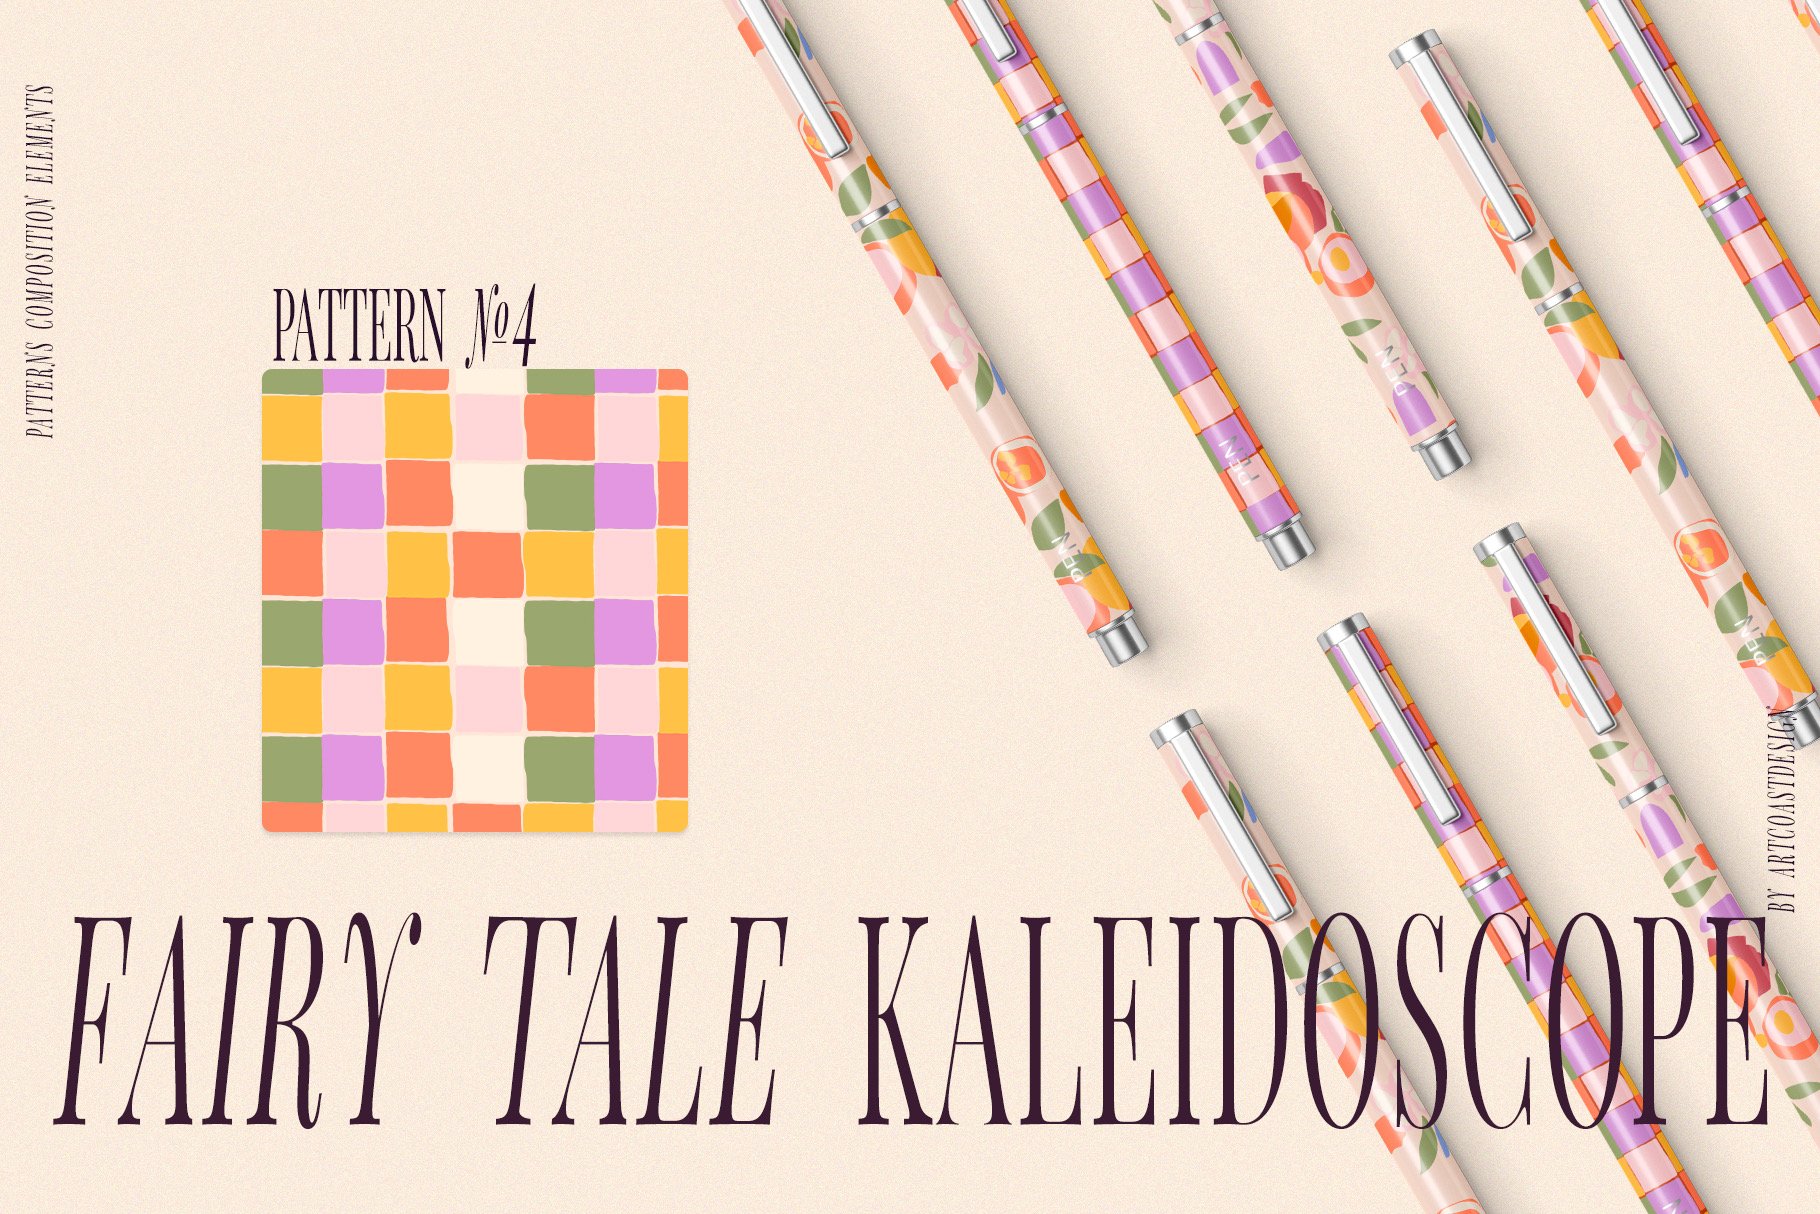 Fairy-Tale-Kaleidoscope-Vector-Art-Patterns-6.jpeg